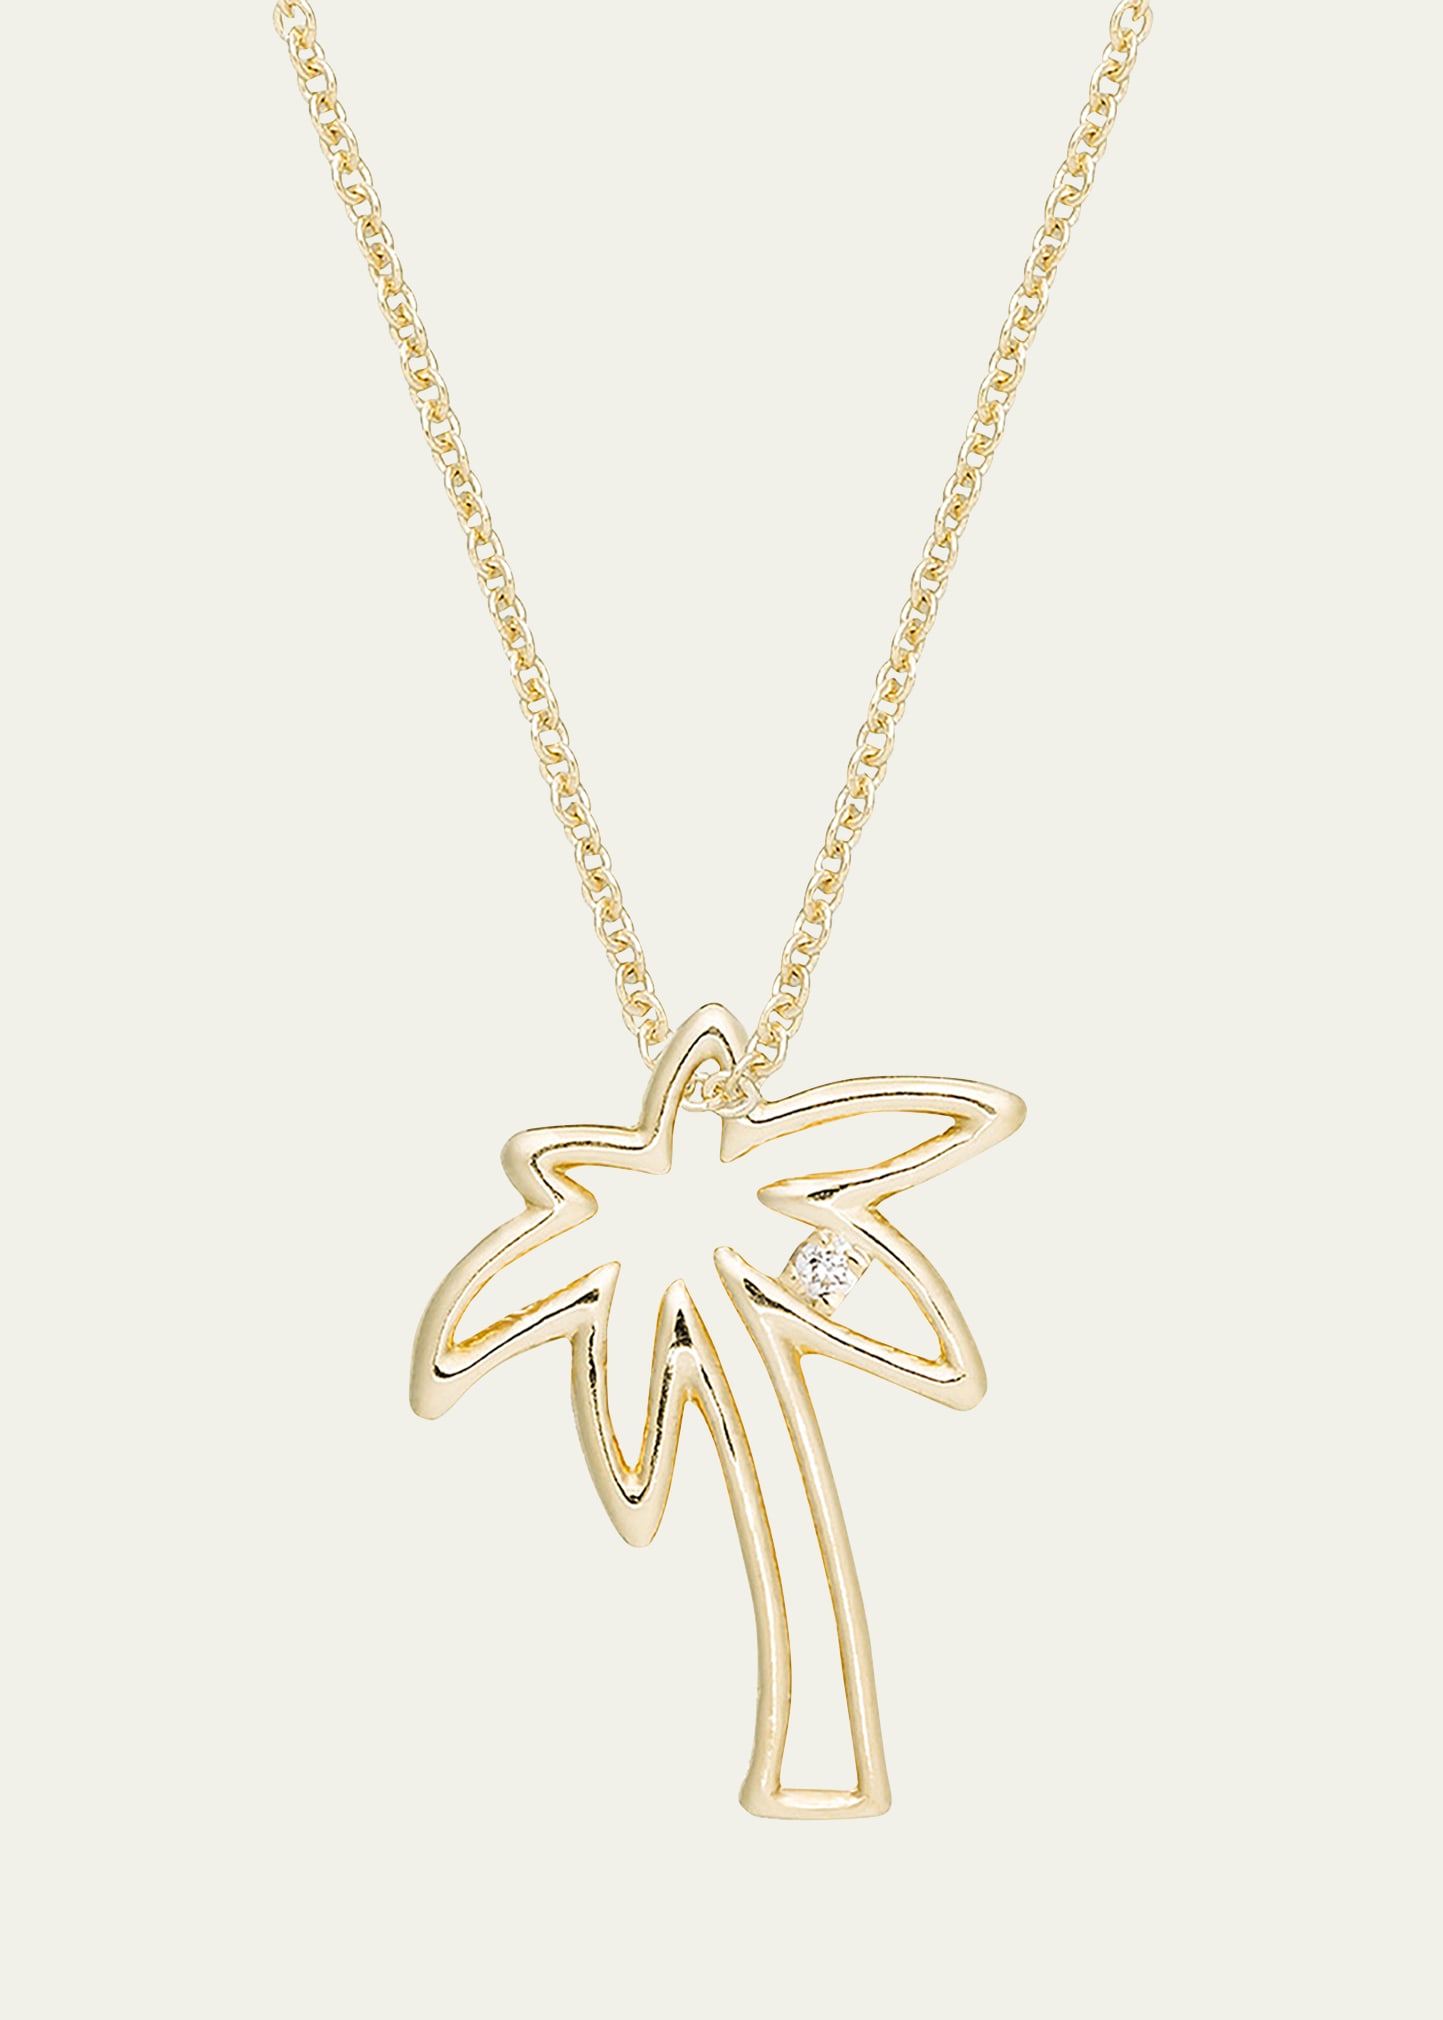 Palm Tree Necklace with Diamond